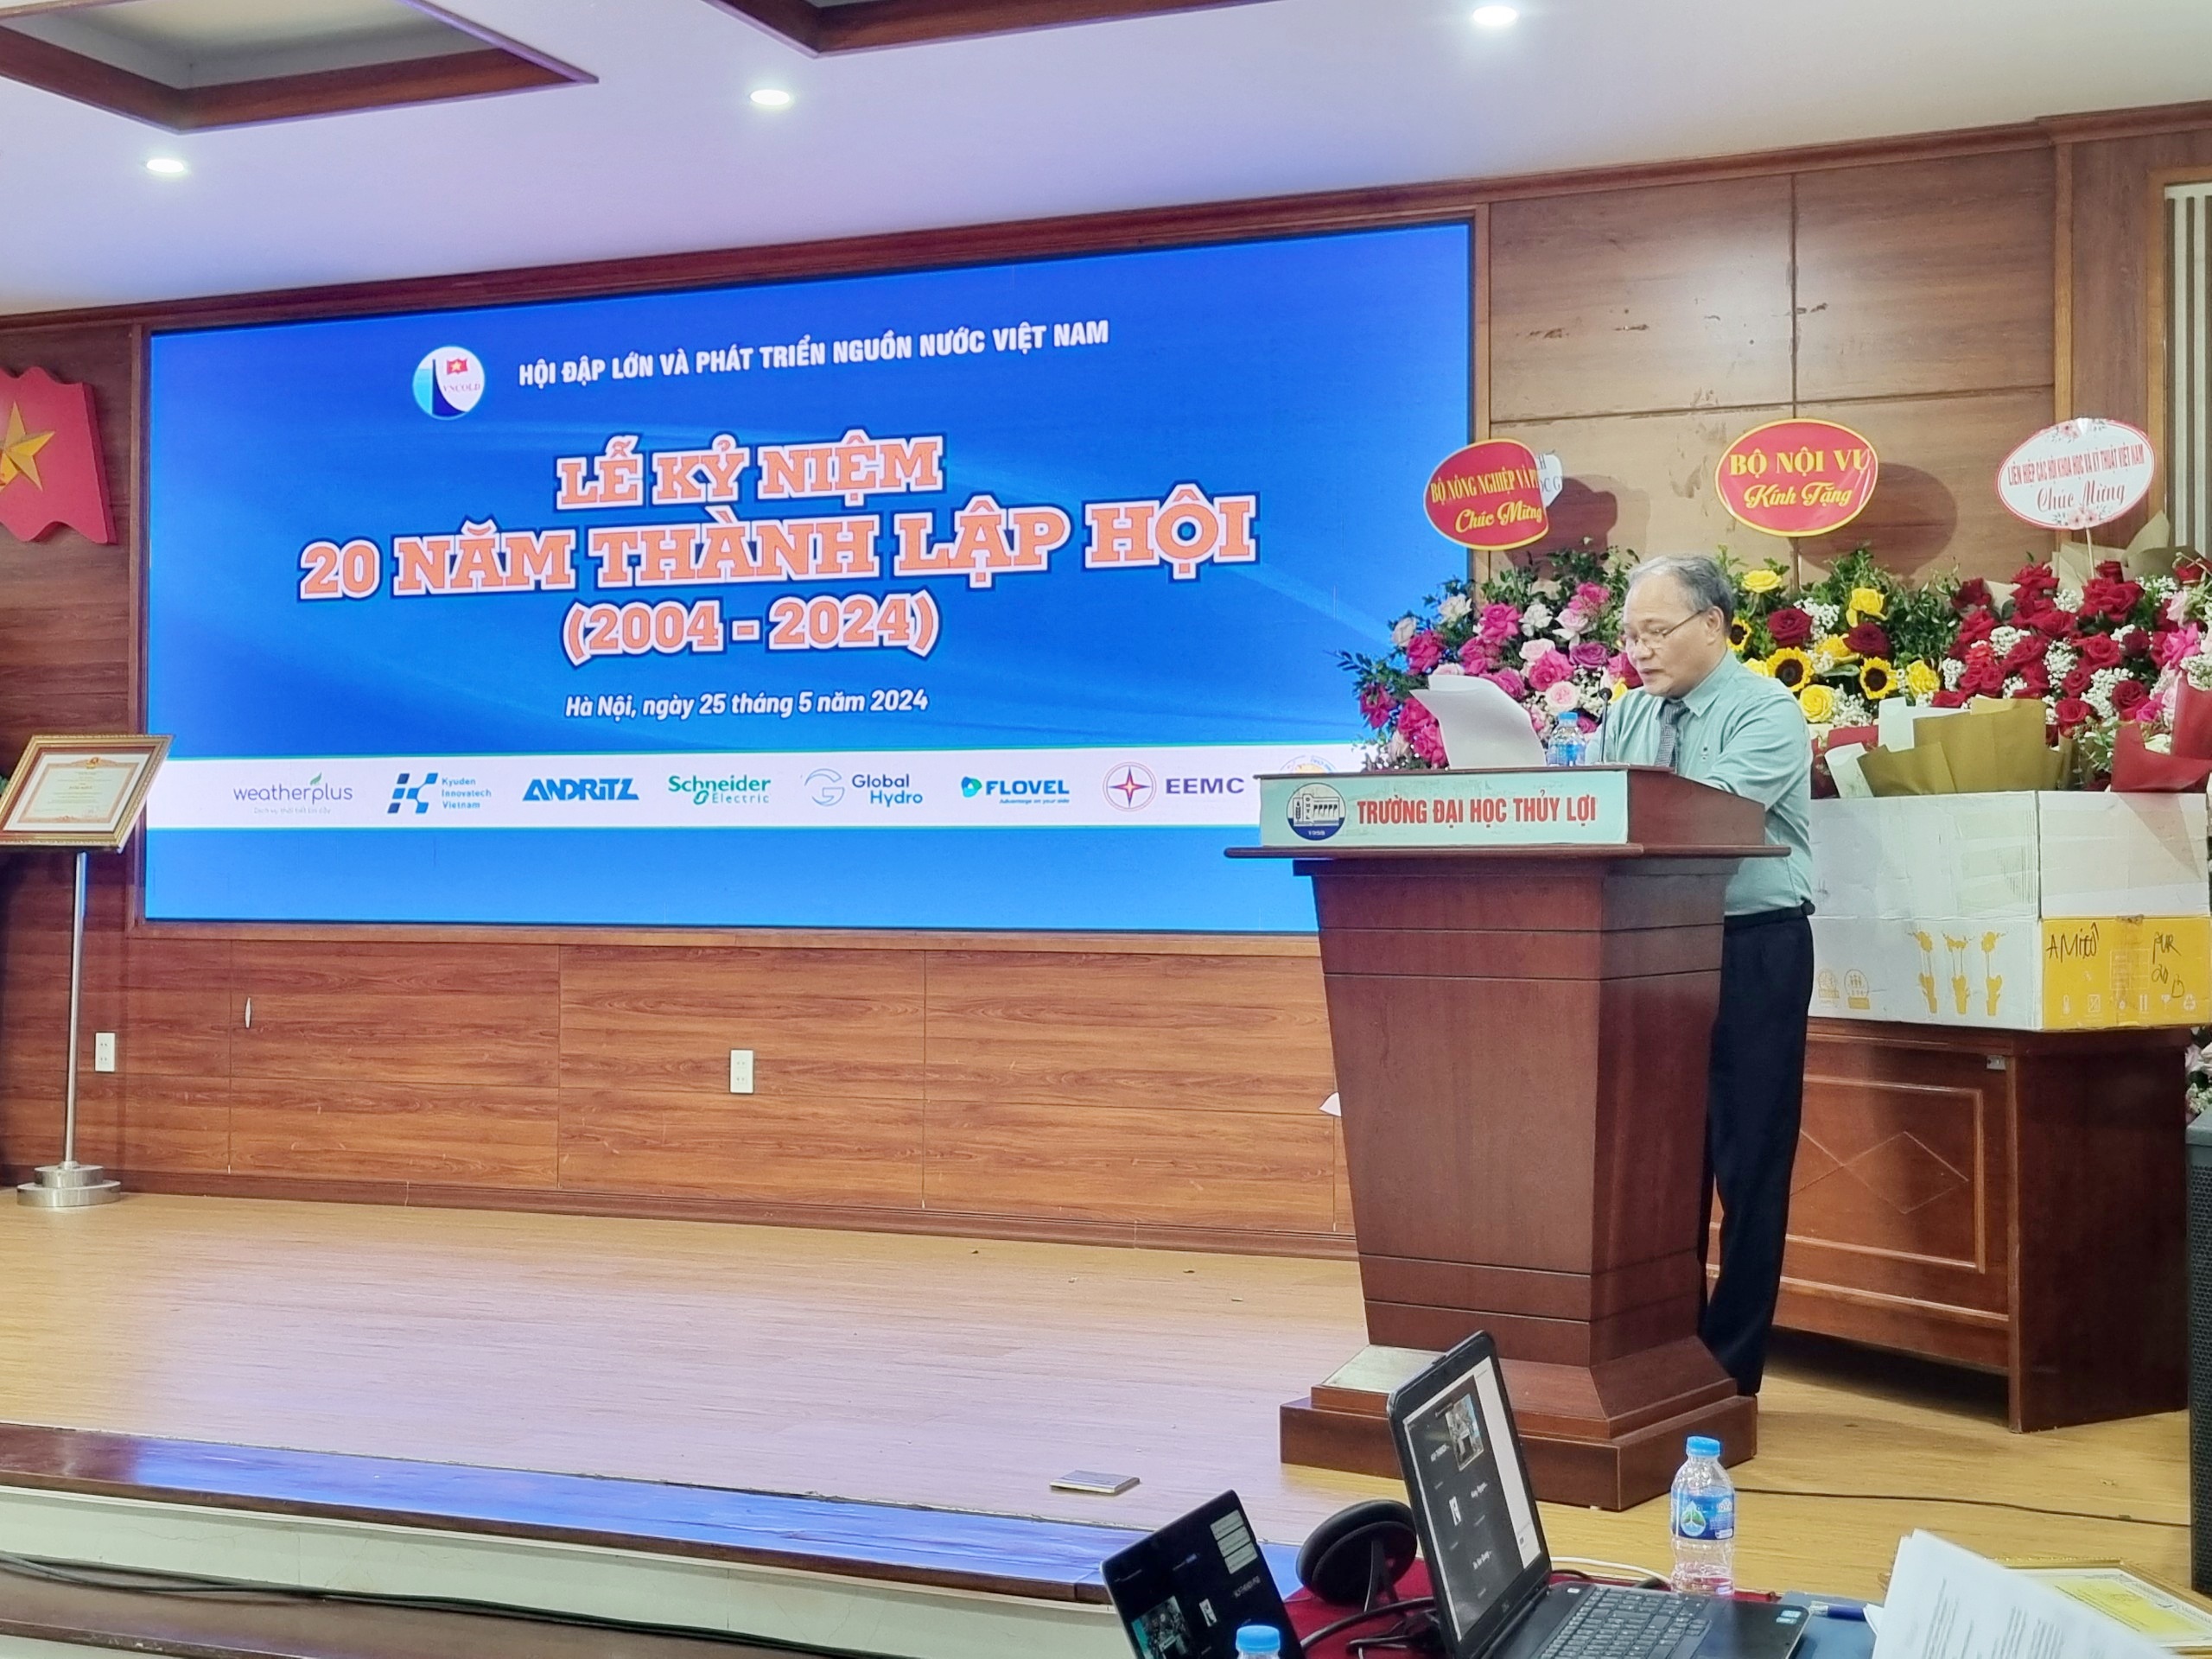 Hội Đập lớn và phát triển nguồn nước Việt Nam kỷ niệm 20 năm thành lập và tổ chức Đại hội lần V nhiệm kỳ 2024 - 2029